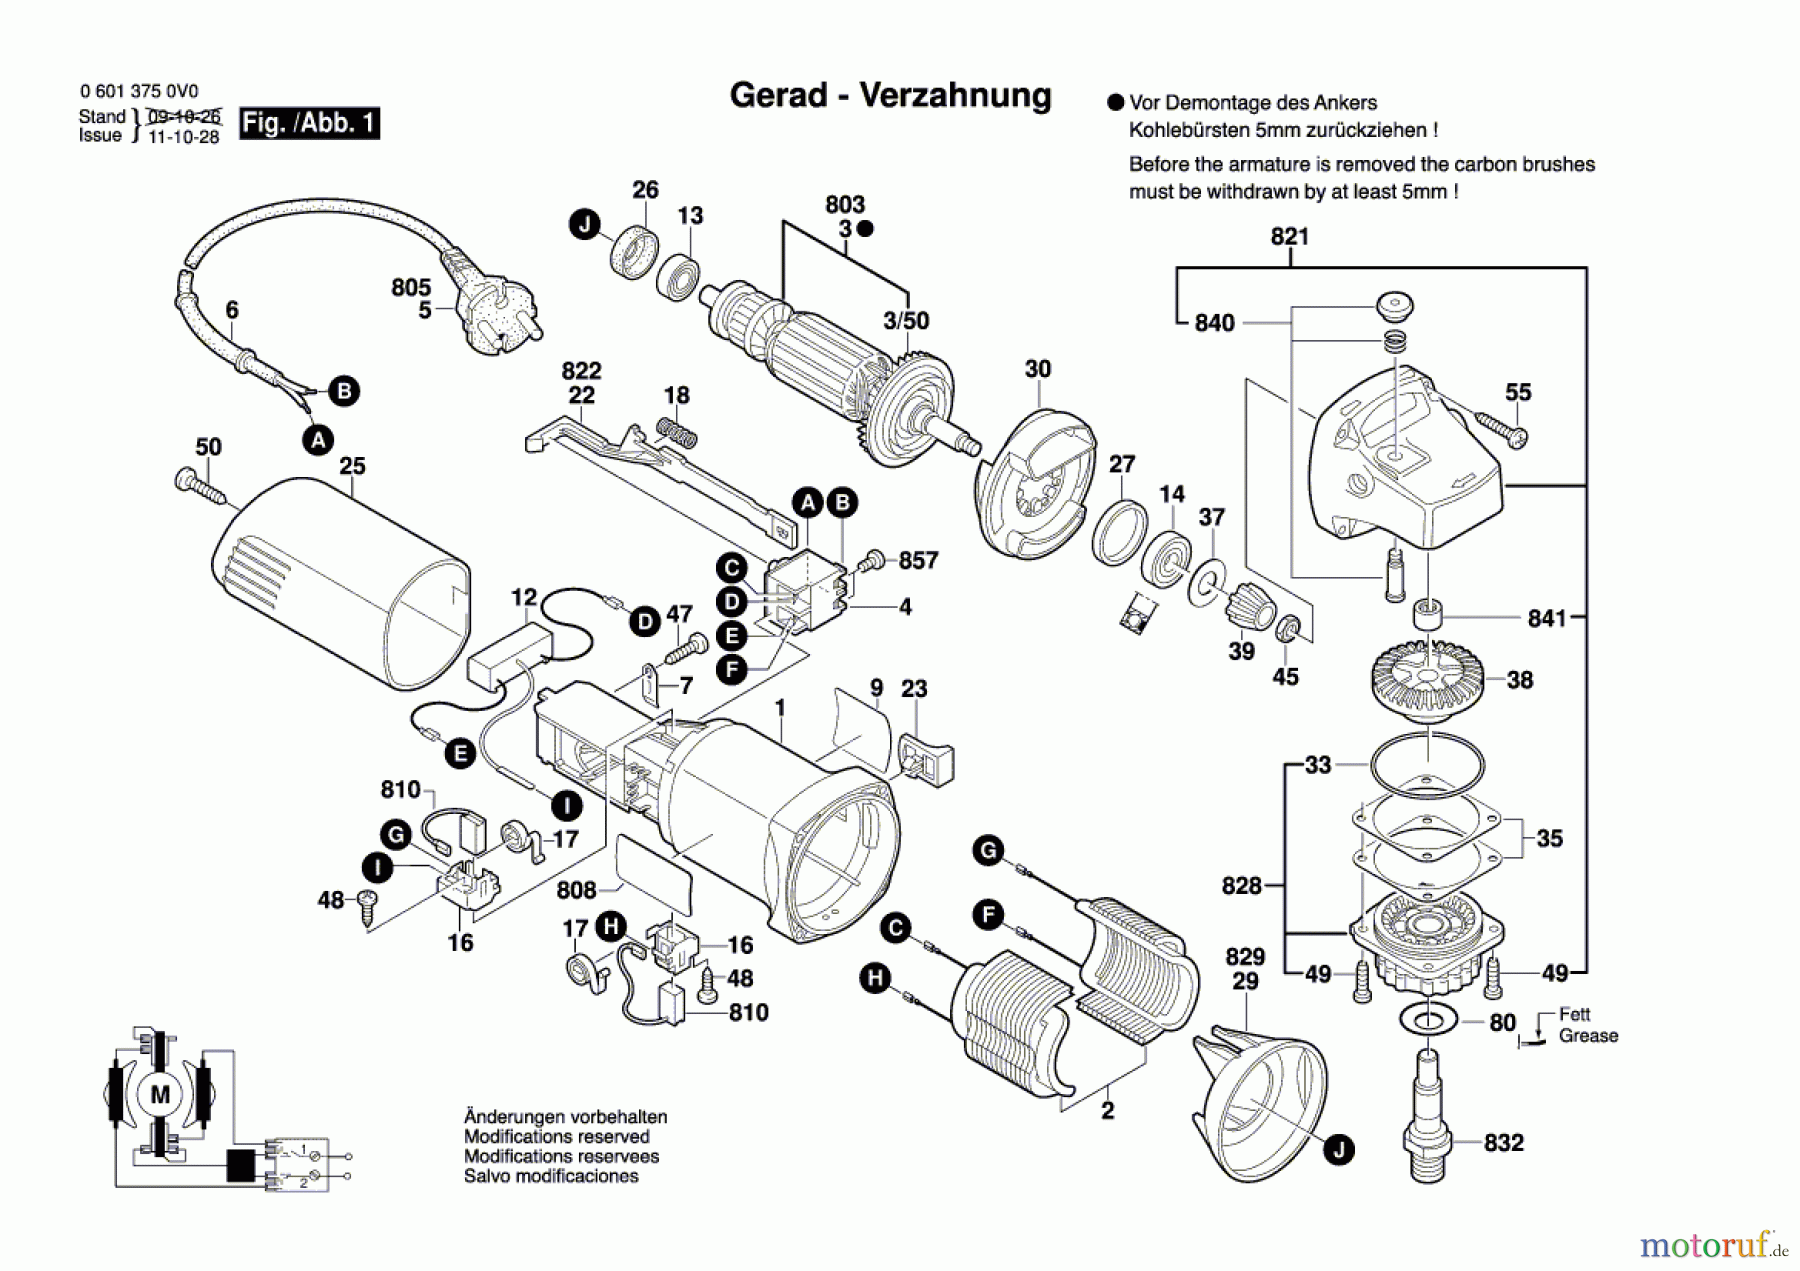  Bosch Werkzeug Winkelschleifer GWS 600 Seite 1